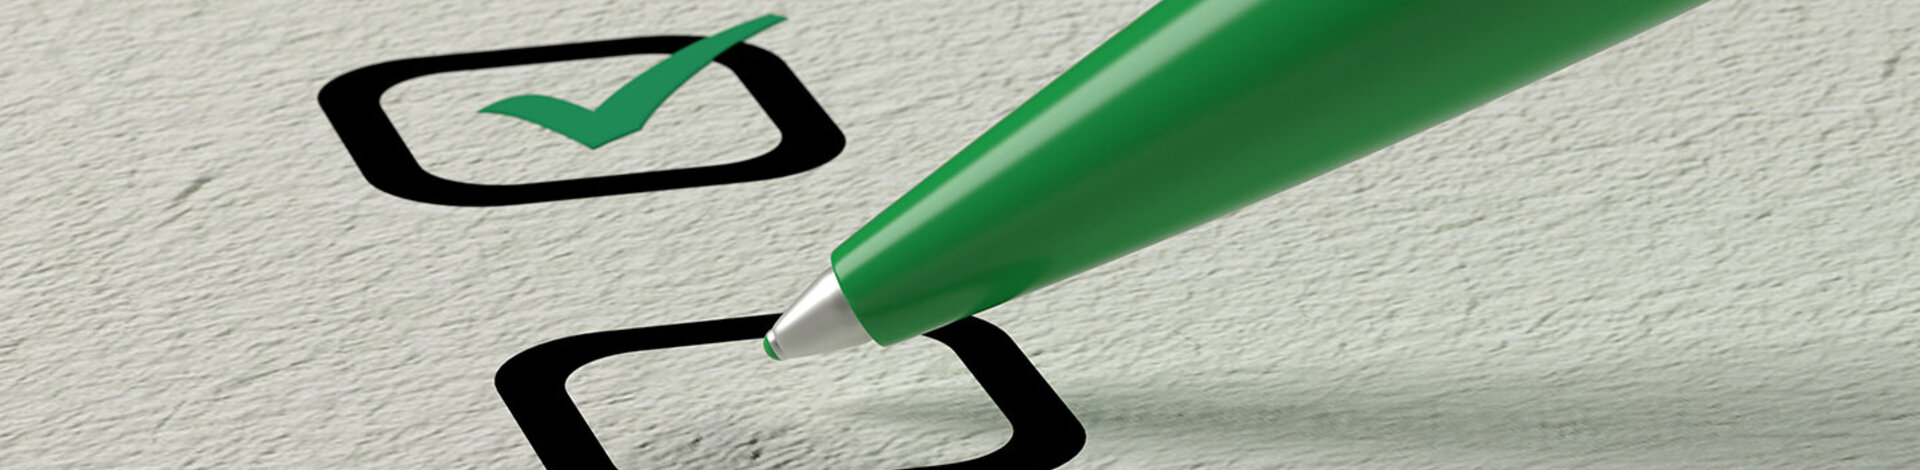 Zu sehen ist ein grüner Stift, der Schwarze Kästchen auf einem weißen Blatt Papier abhakt.